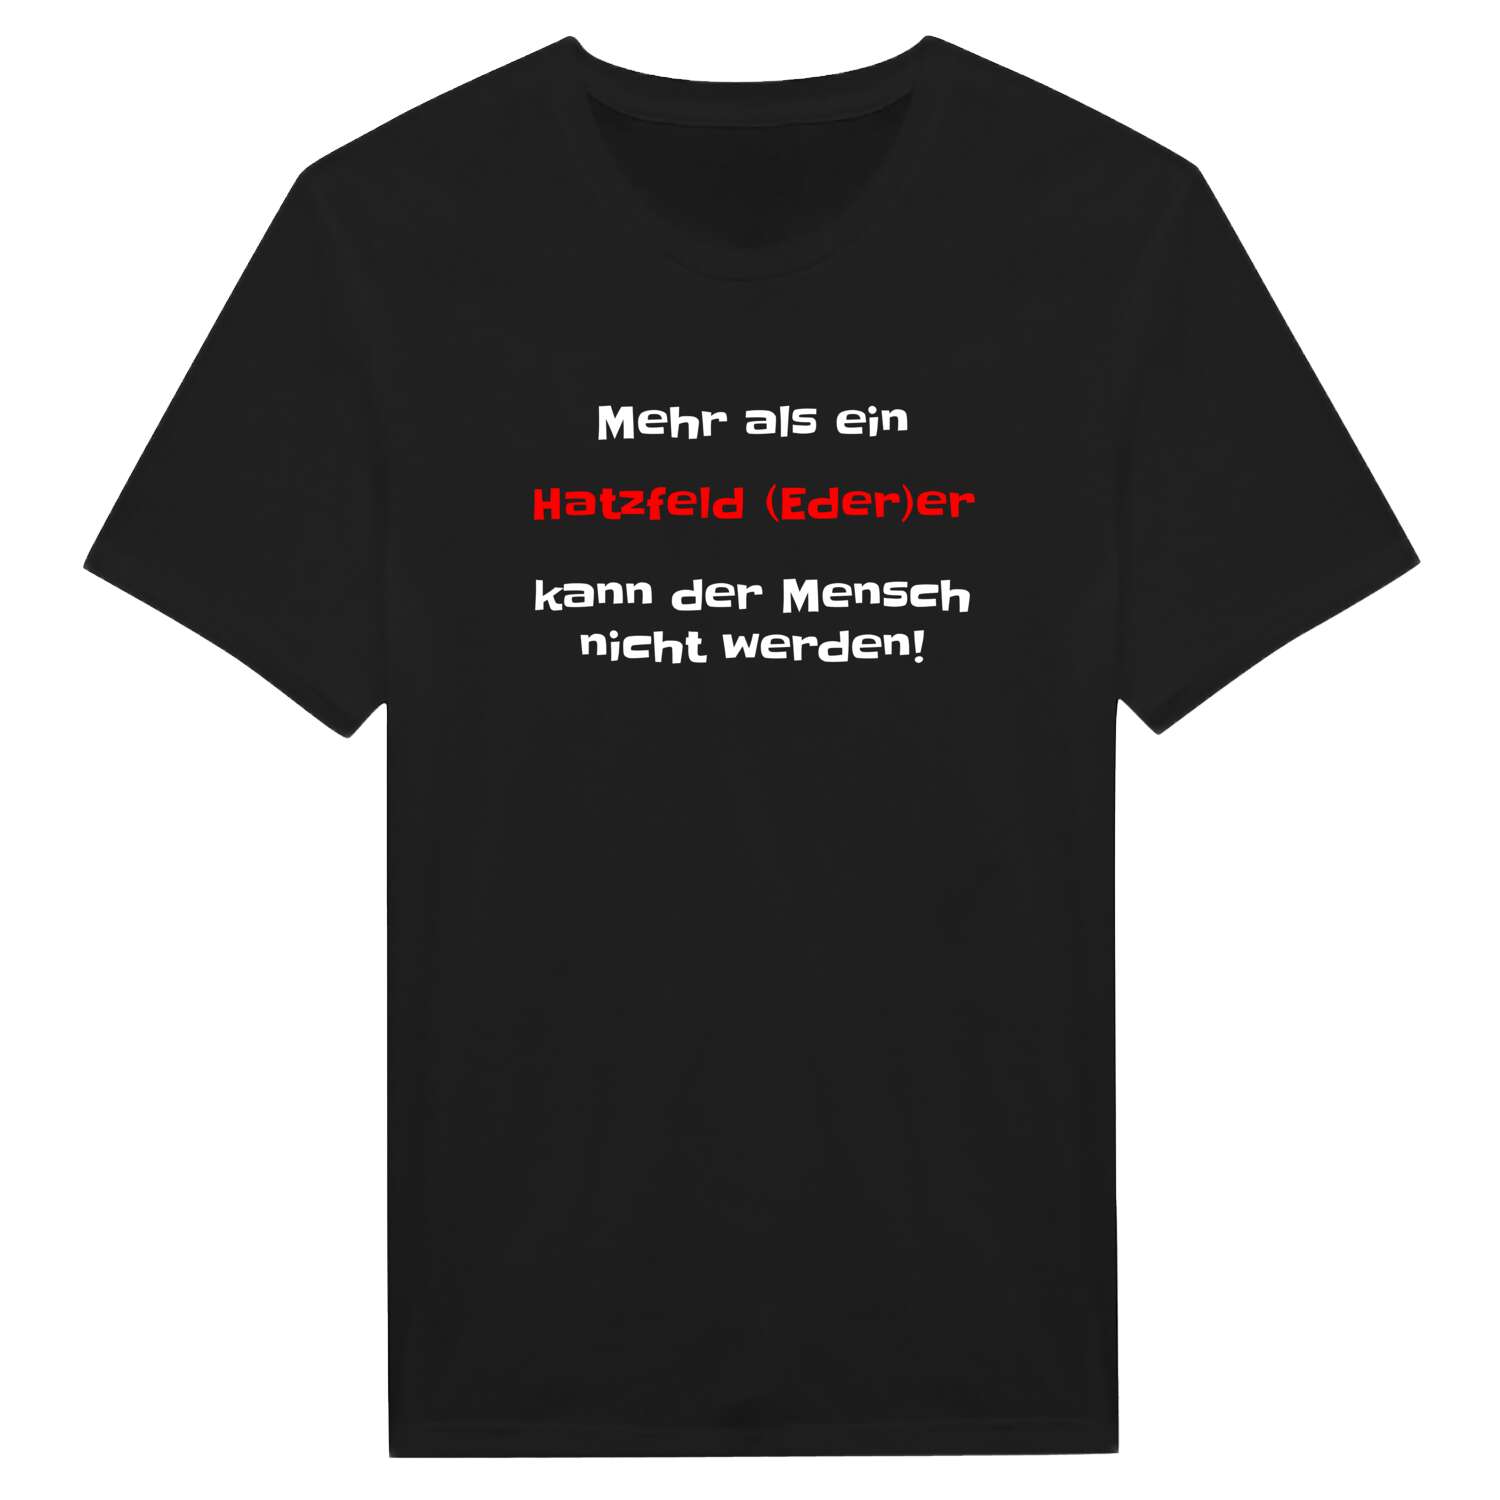 Hatzfeld (Eder) T-Shirt »Mehr als ein«